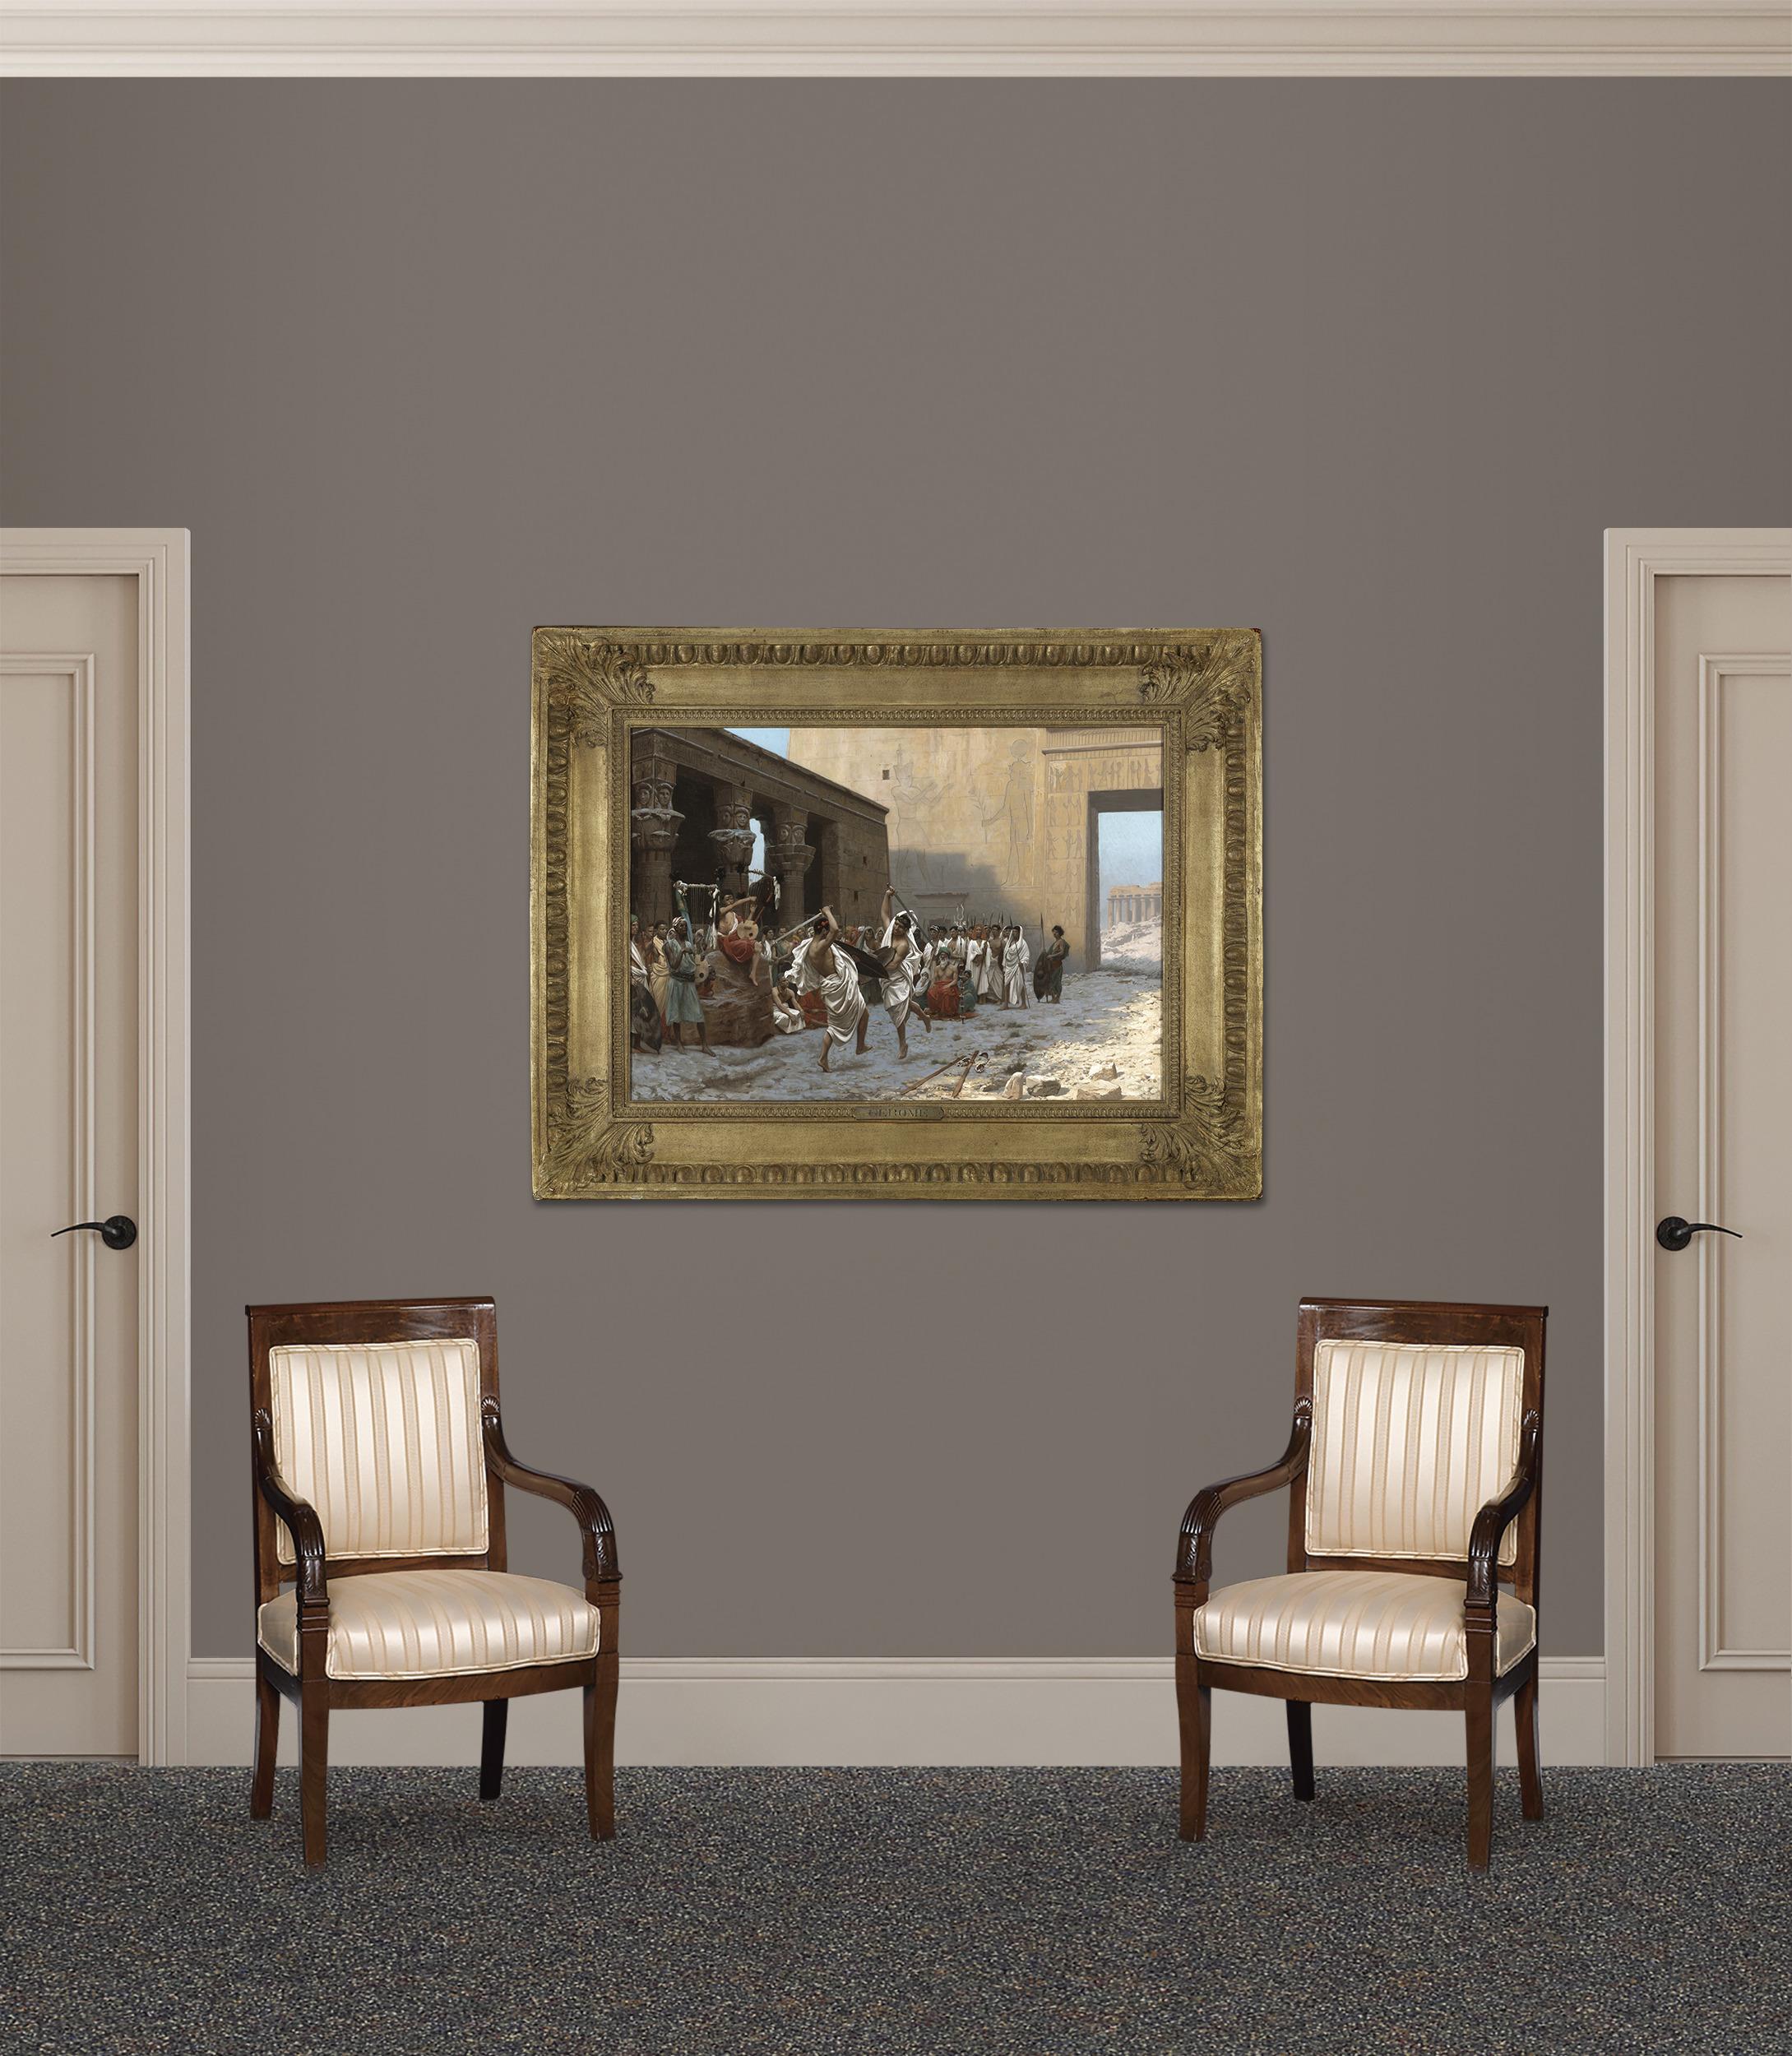 Ce tableau de Jean-Léon Gérôme intitulé La Danse pyrrhique compte parmi les compositions les plus fascinantes jamais réalisées par la main du maître académique. Les scènes emblématiques de l'Orient de Gérôme ont captivé toute une génération, et